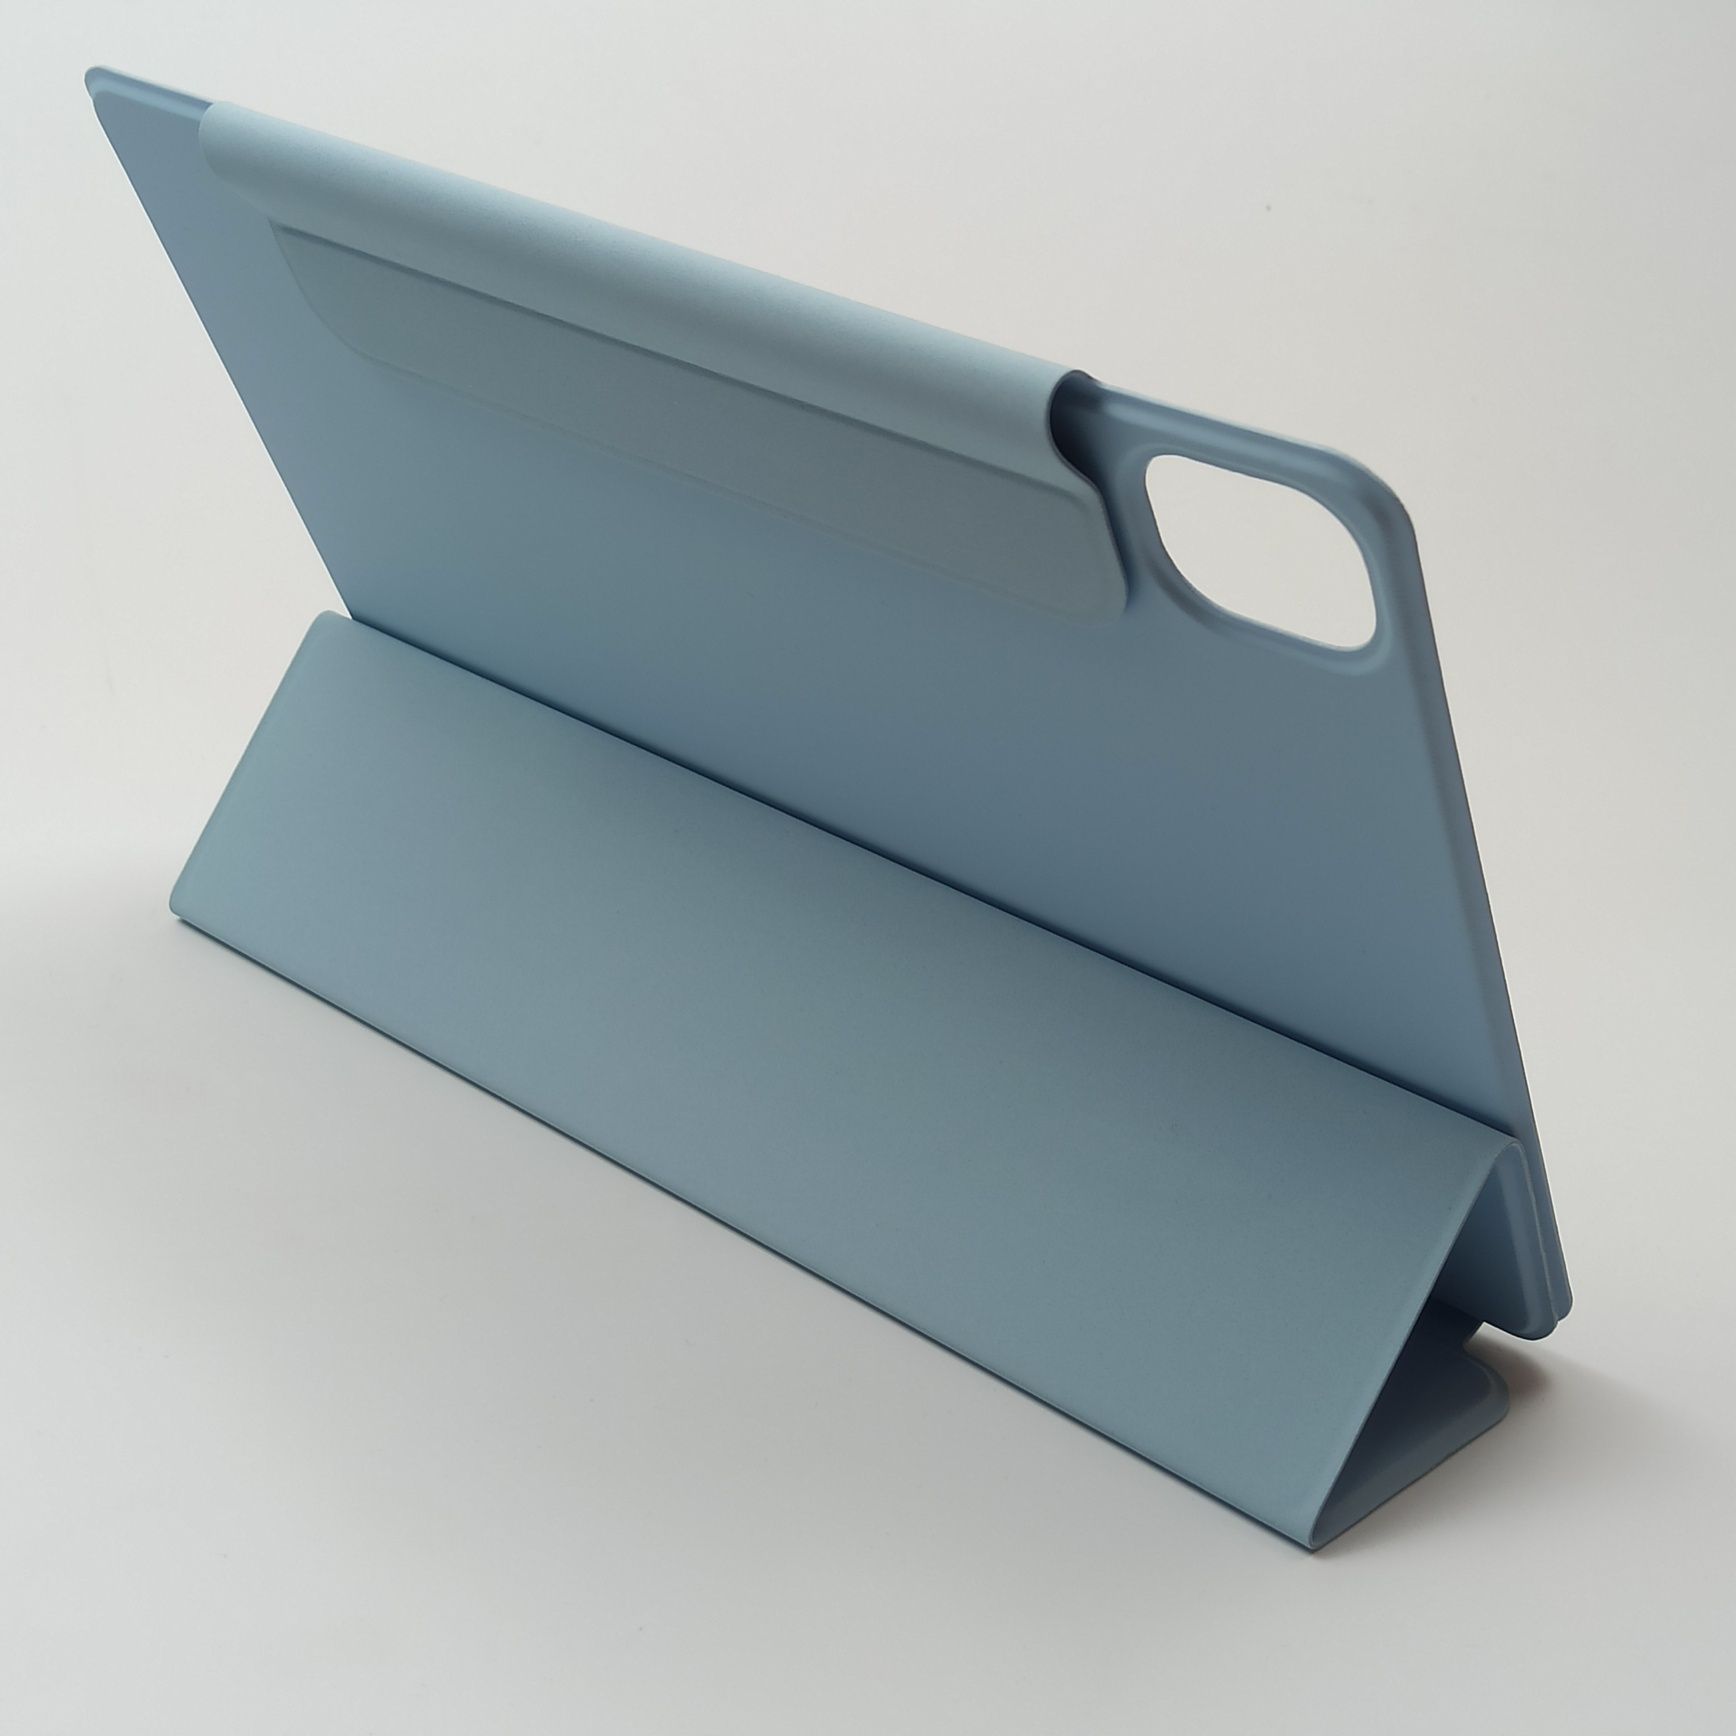 Чехол Smart Cover для Xiaomi Pad 5 / 5 Pro с держателем стилуса